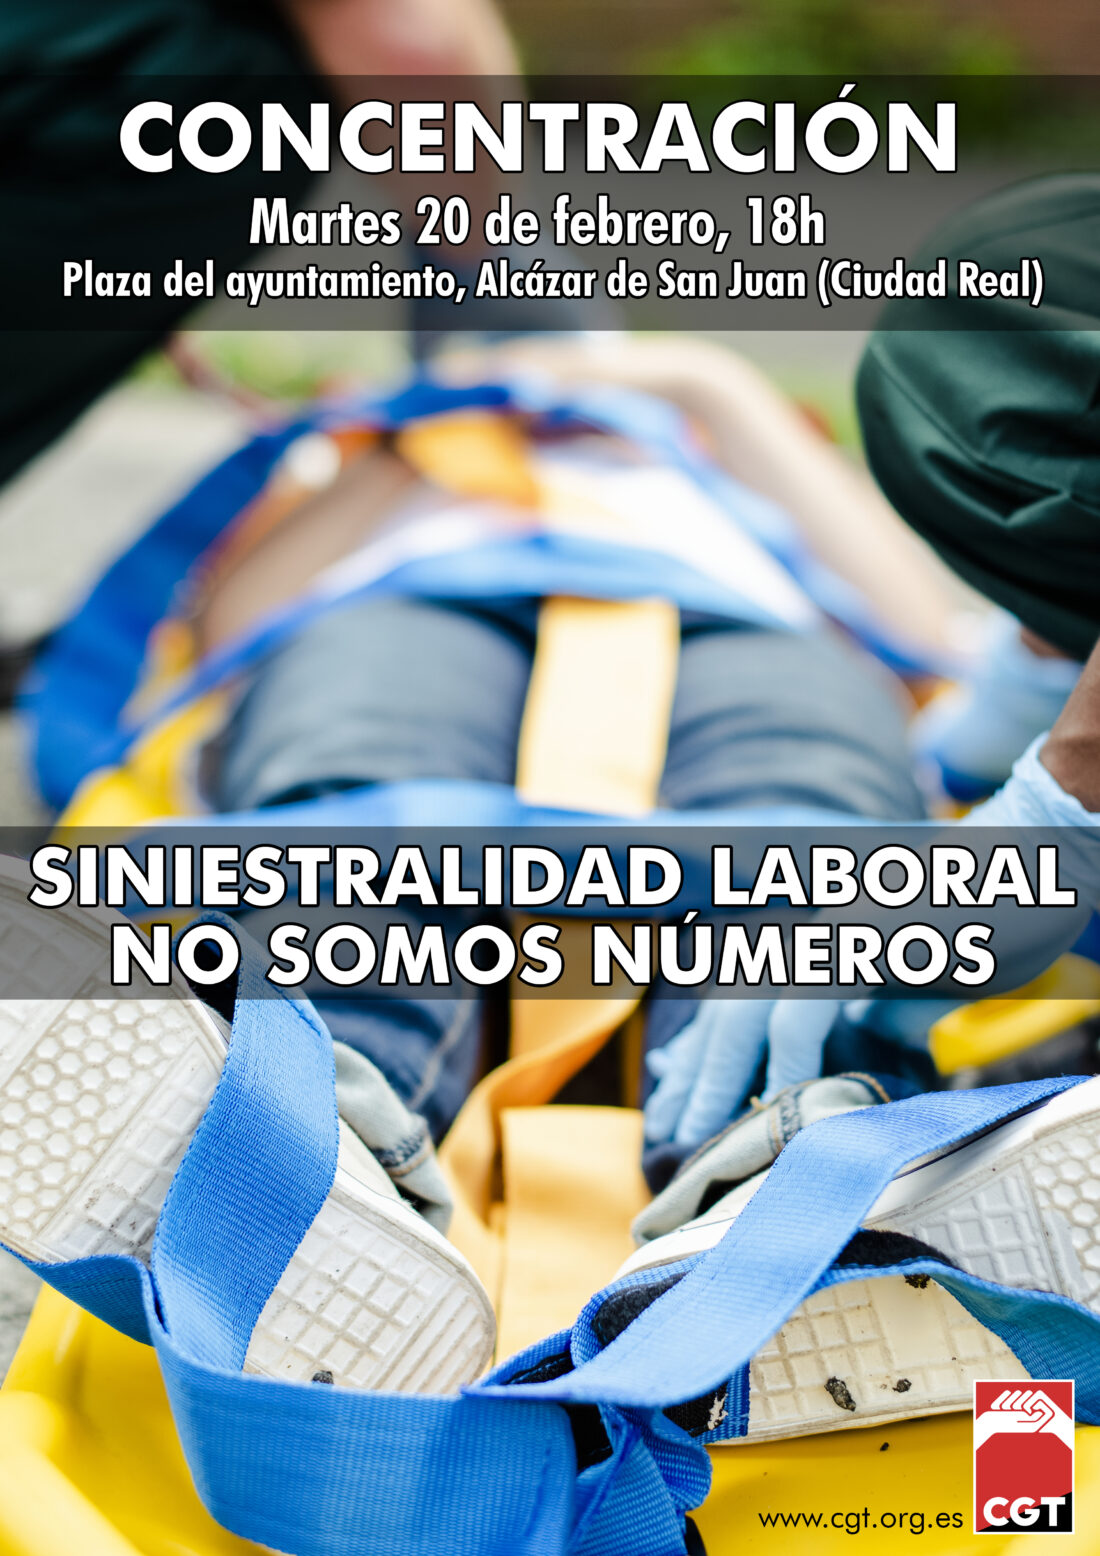 Siniestralidad laboral: Concentración en Alcázar de San Juan, 20 de febrero